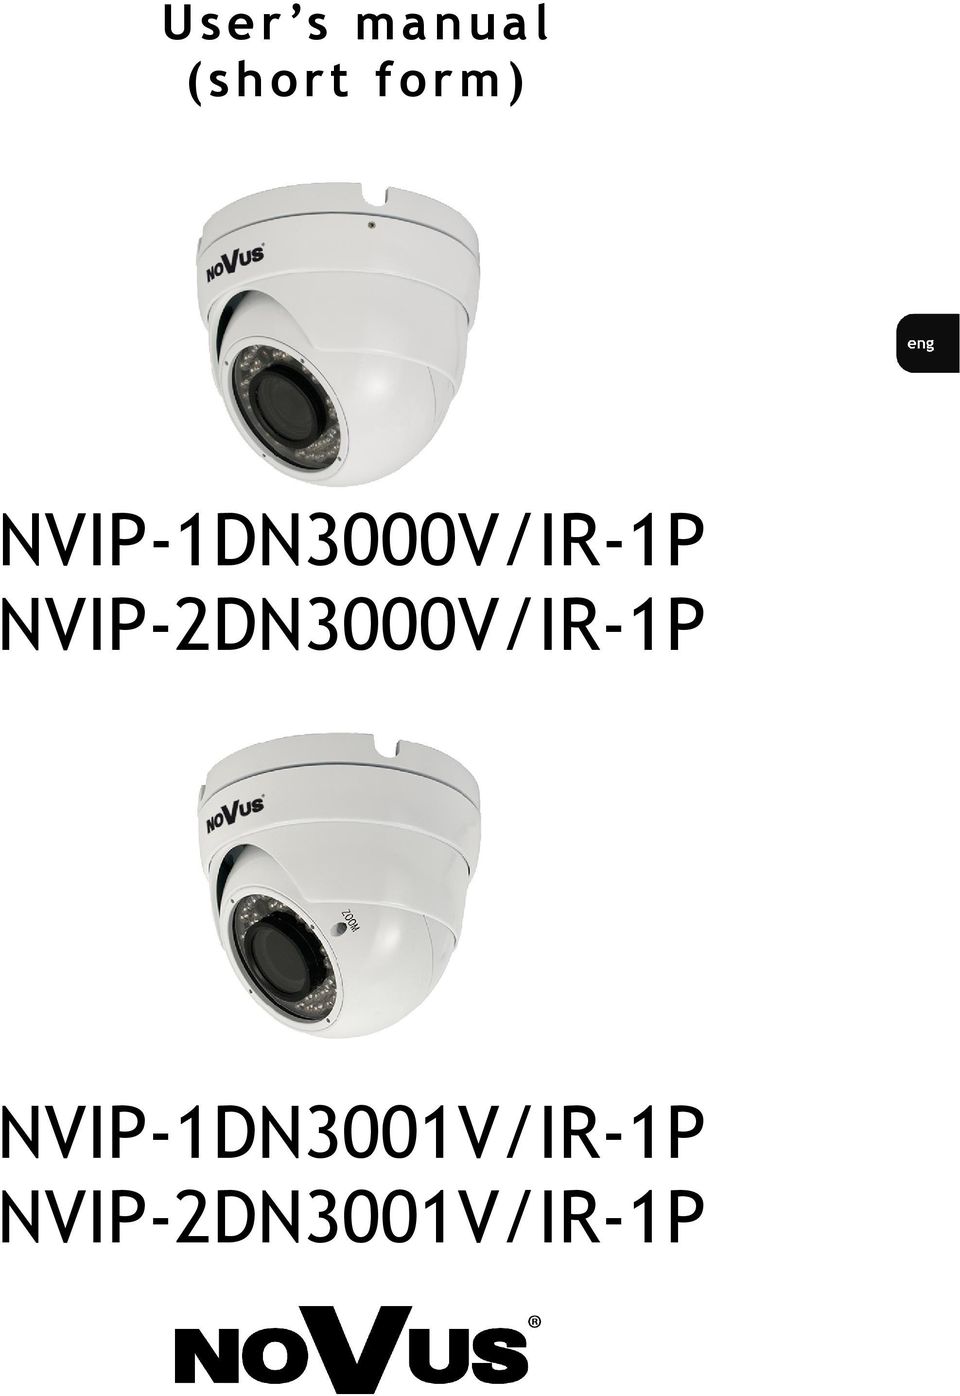 NVIP-2DN3000V/IR-1P